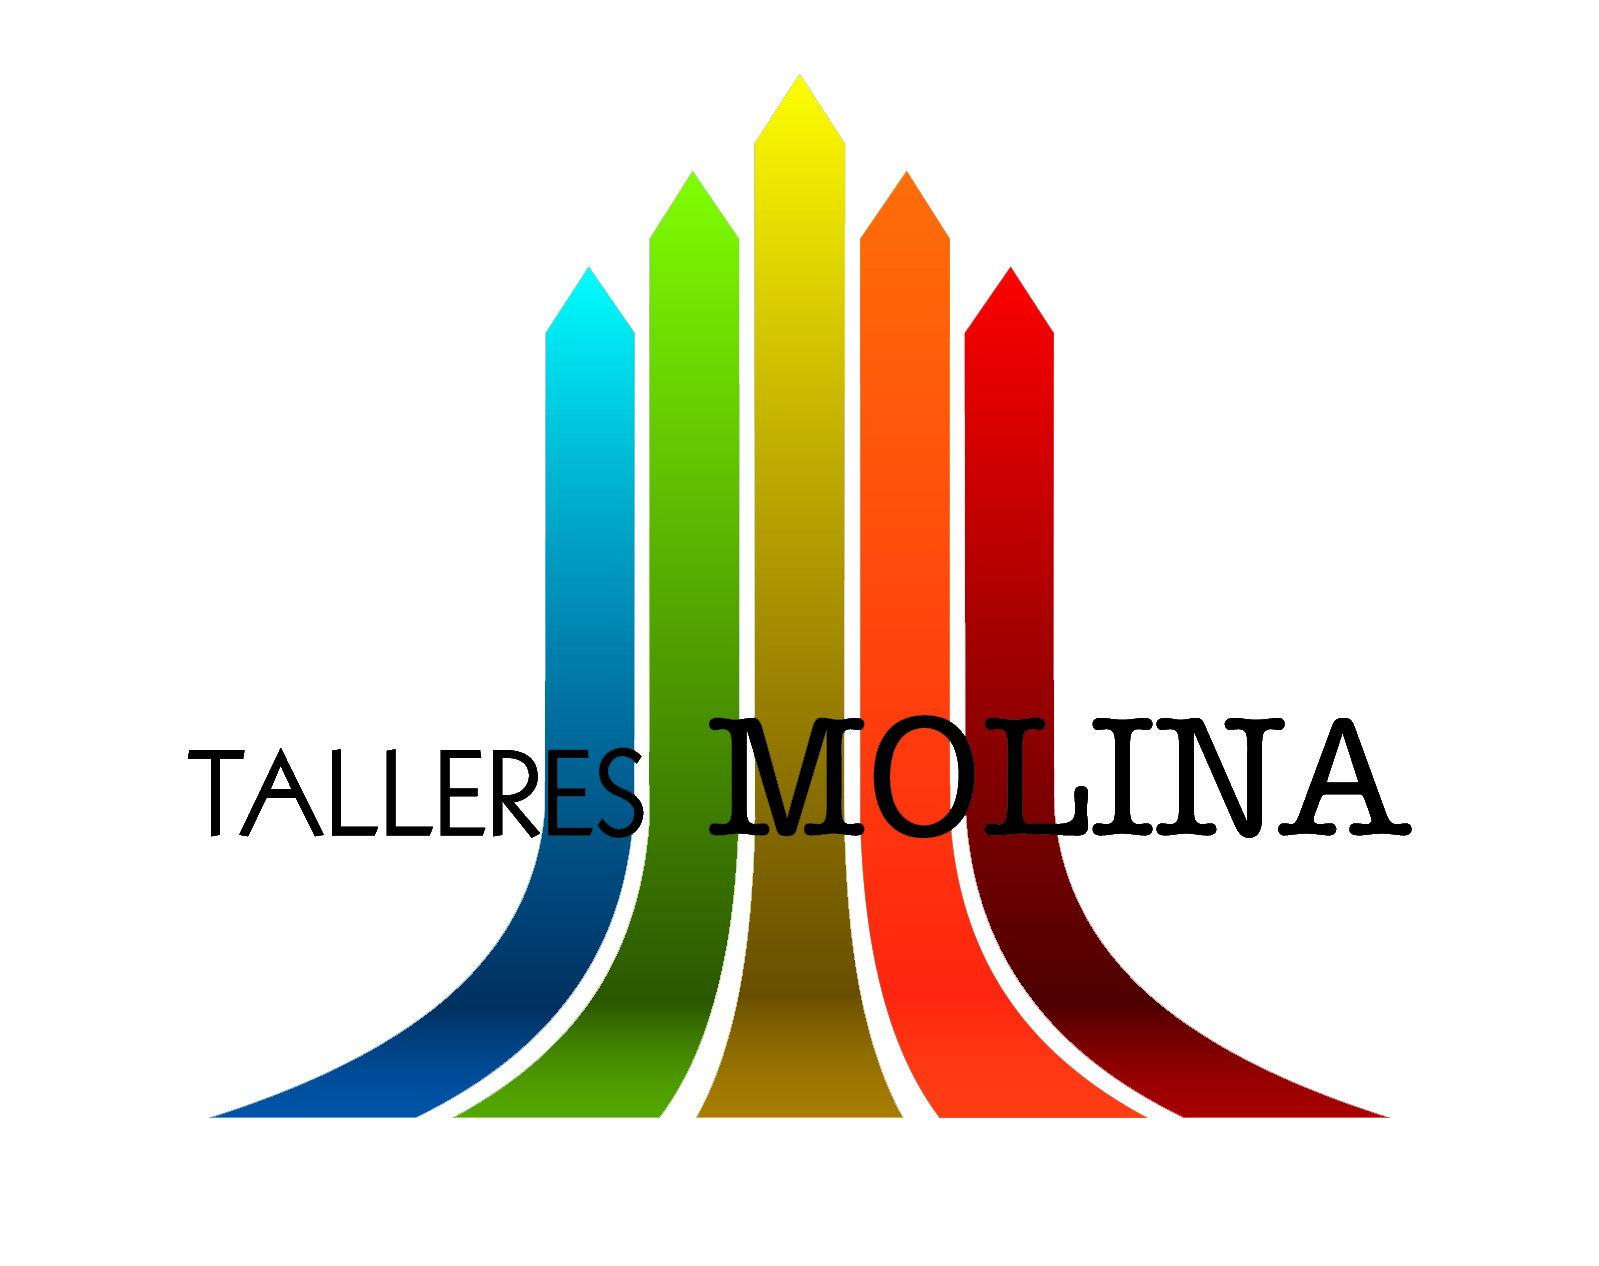 TALLERES MOLINA